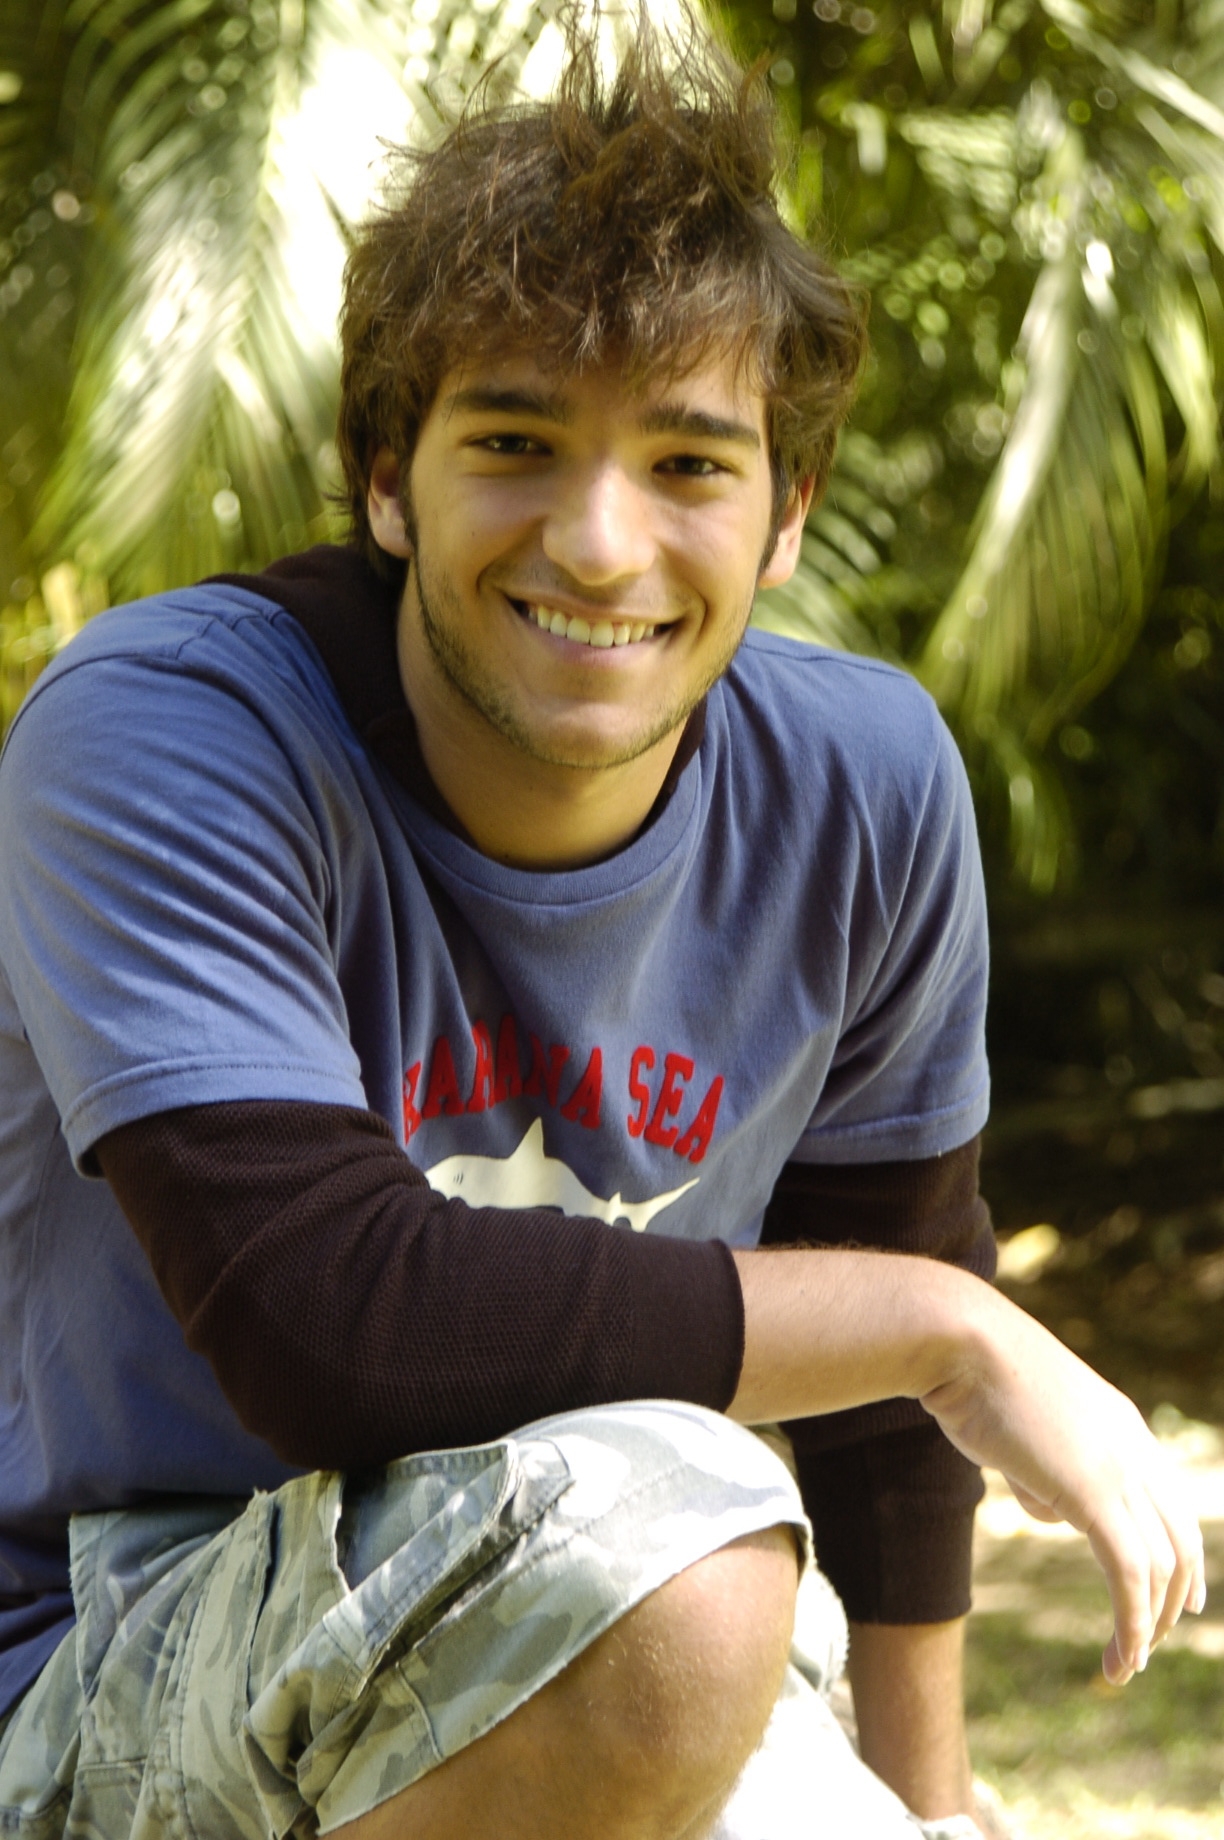 Humberto Carrão como Caio em "Malhação" em 2009